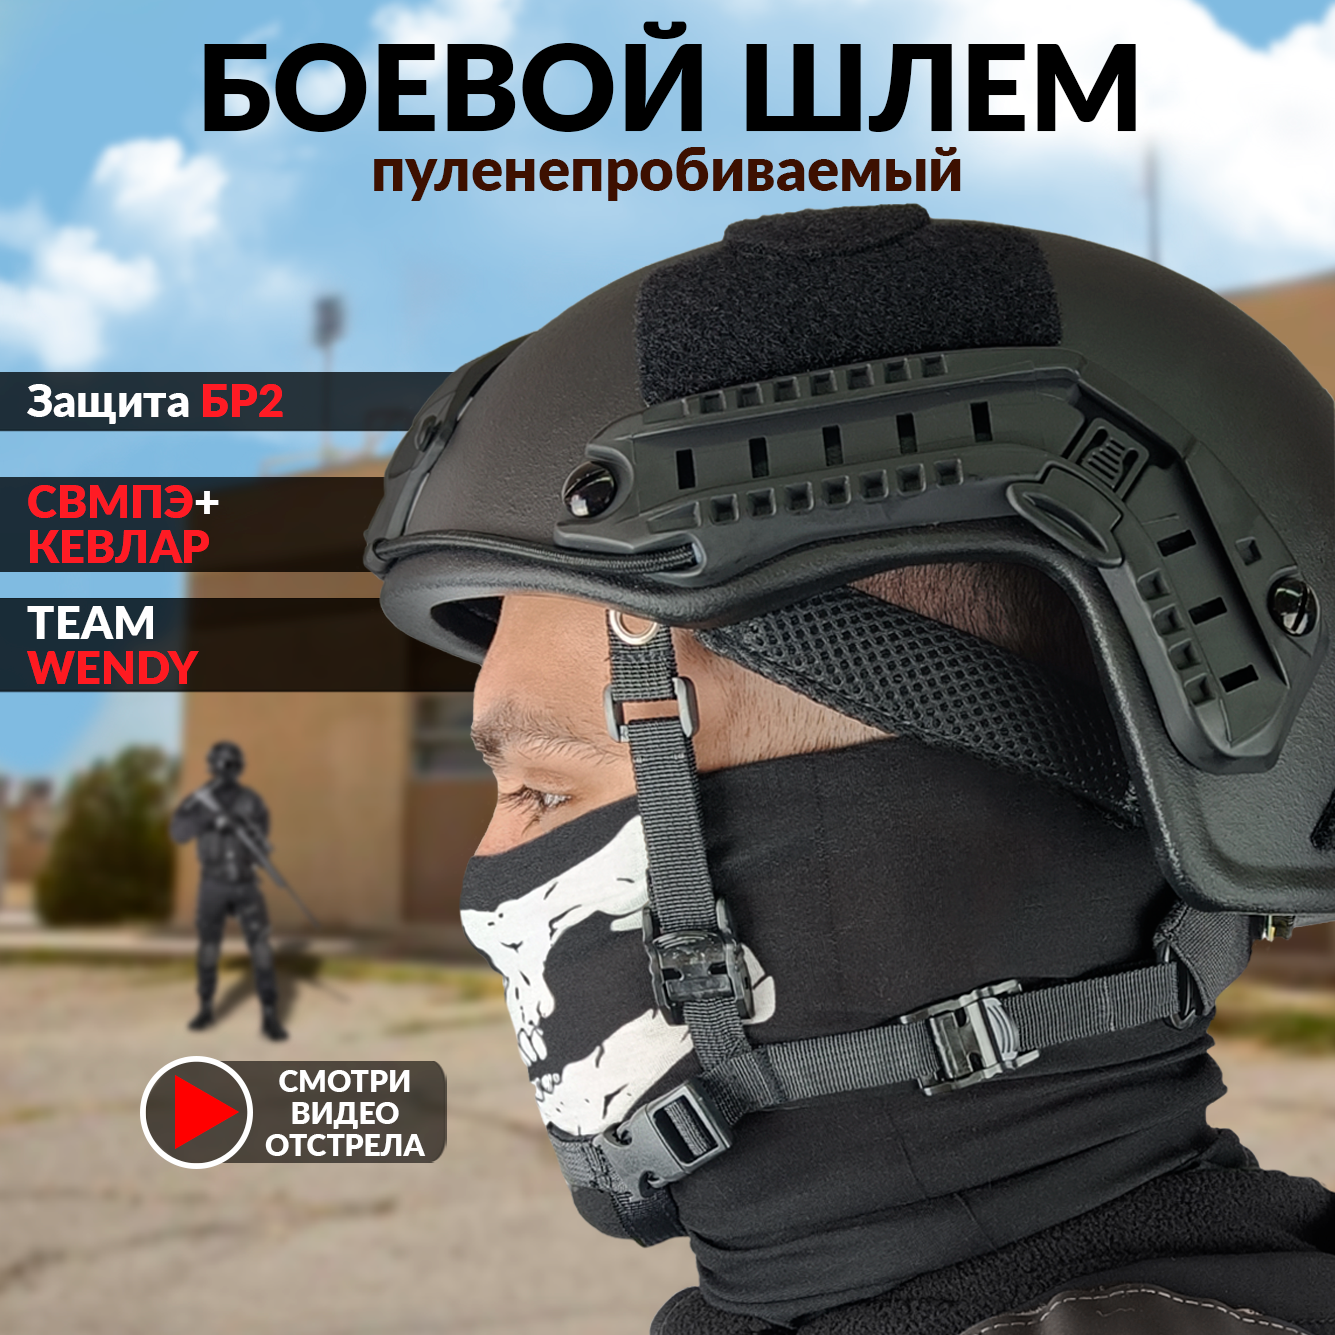 Тактический пуленепробиваемый военный шлем MICH2000 свмпэ без ушей, черный